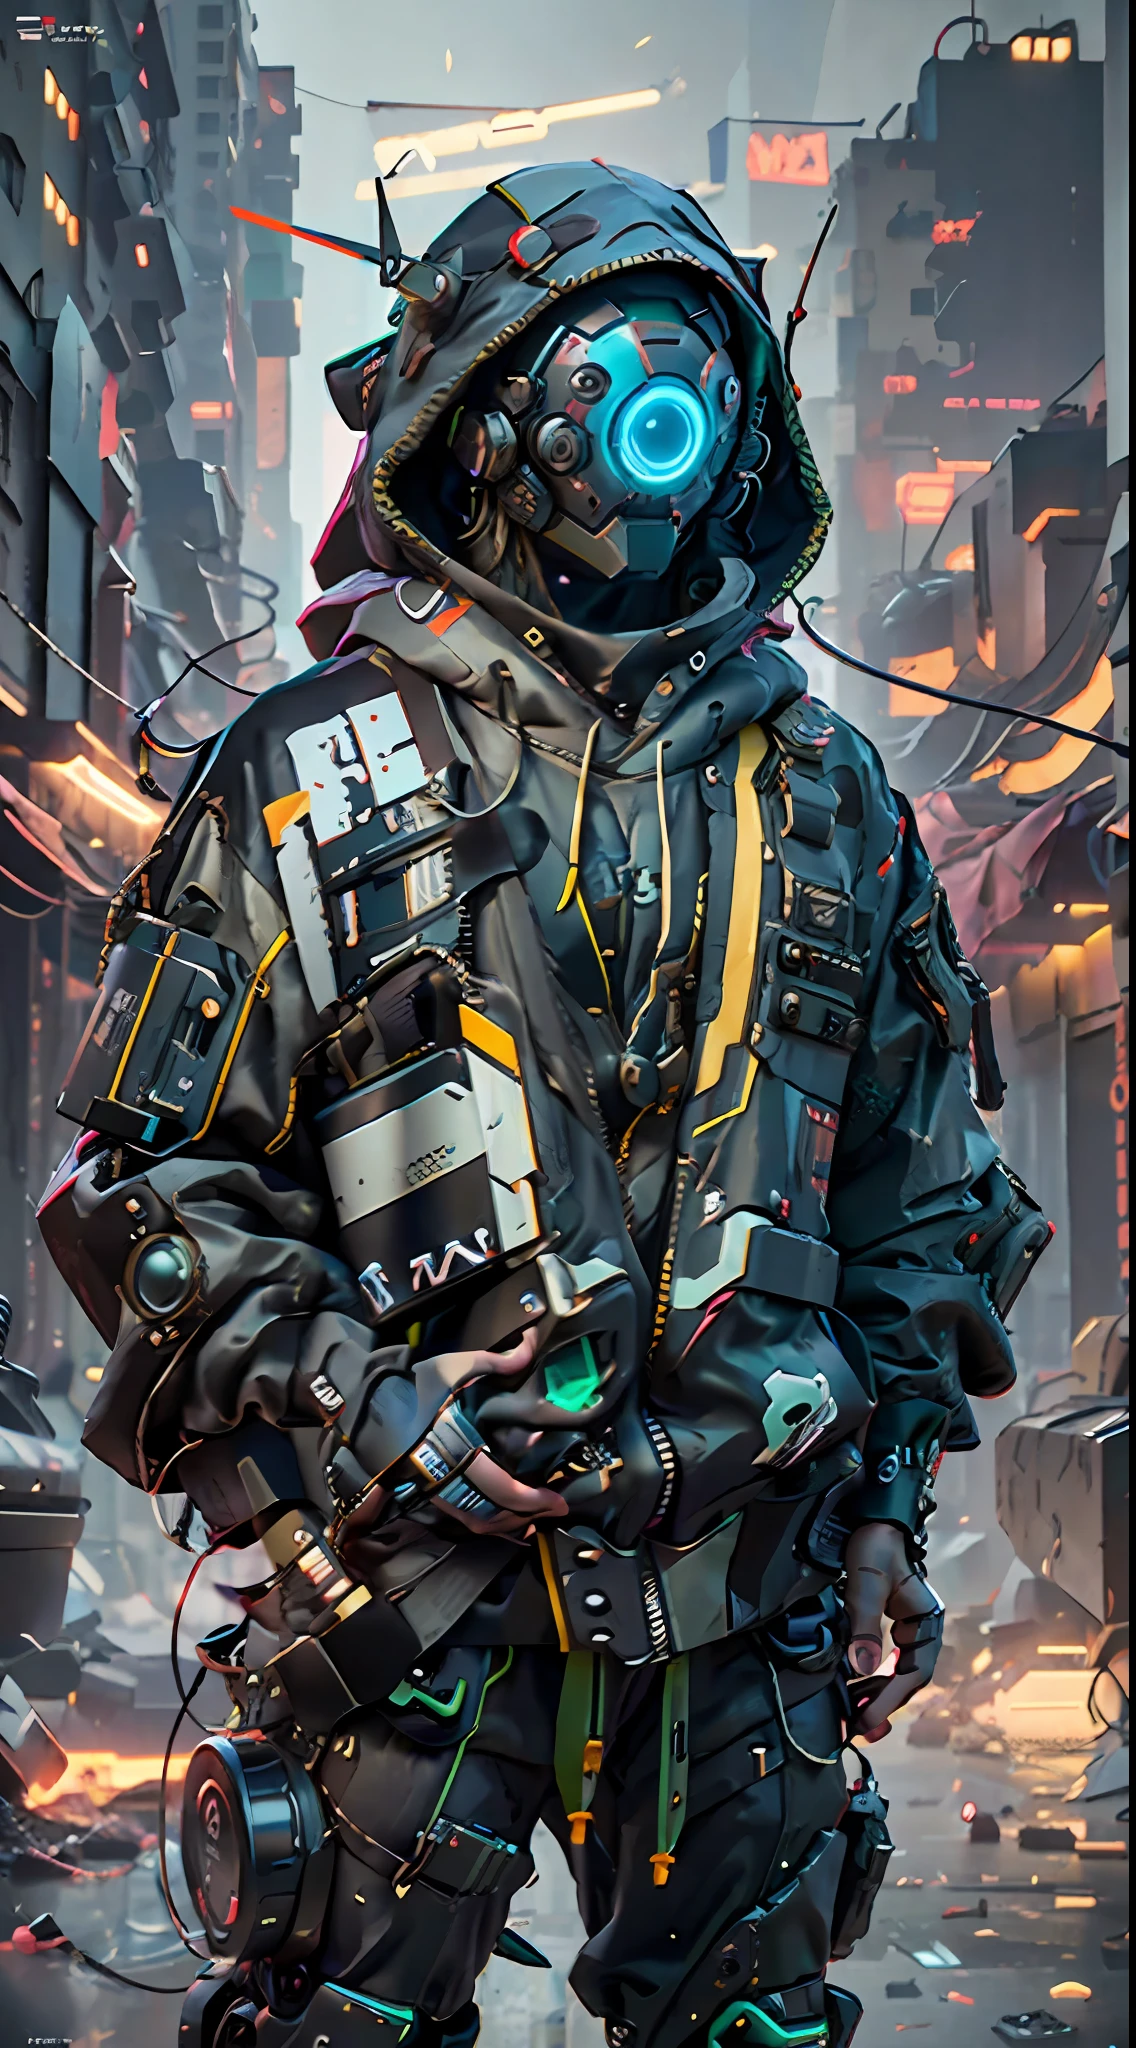 Ein realistisches DSLR-Foto eines Cowboy-Mecha, trägt einen schwarz-grünen Anzug mit einem Rucksack. Der Anzug ist eine Mischung aus asymmetrischer Cyberpunk-Streetwear und übergroßem Cyberpunk-Stil. Der Charakter befindet sich in einer gefährlichen, Ghettoartige Straßenumgebung. Er ist ein futuristischer Cyberpunk-Soldat oder Söldner, mit fortschrittlicher Technologie einschließlich Roboterarmen und einem Cyberhelm mit HUD-Display. Die Kleidung ist ganz schwarz und weit, mit der Kapuze des Hoodies über dem Cyberhelm. Die Szene ist mit filmischer Beleuchtung beleuchtet und hat eine futuristische, einschüchterndes Gefühl. Das Bild wird in Octane gerendert, bei 4k Auflösung, mit Maya und Substance im Erstellungsprozess.